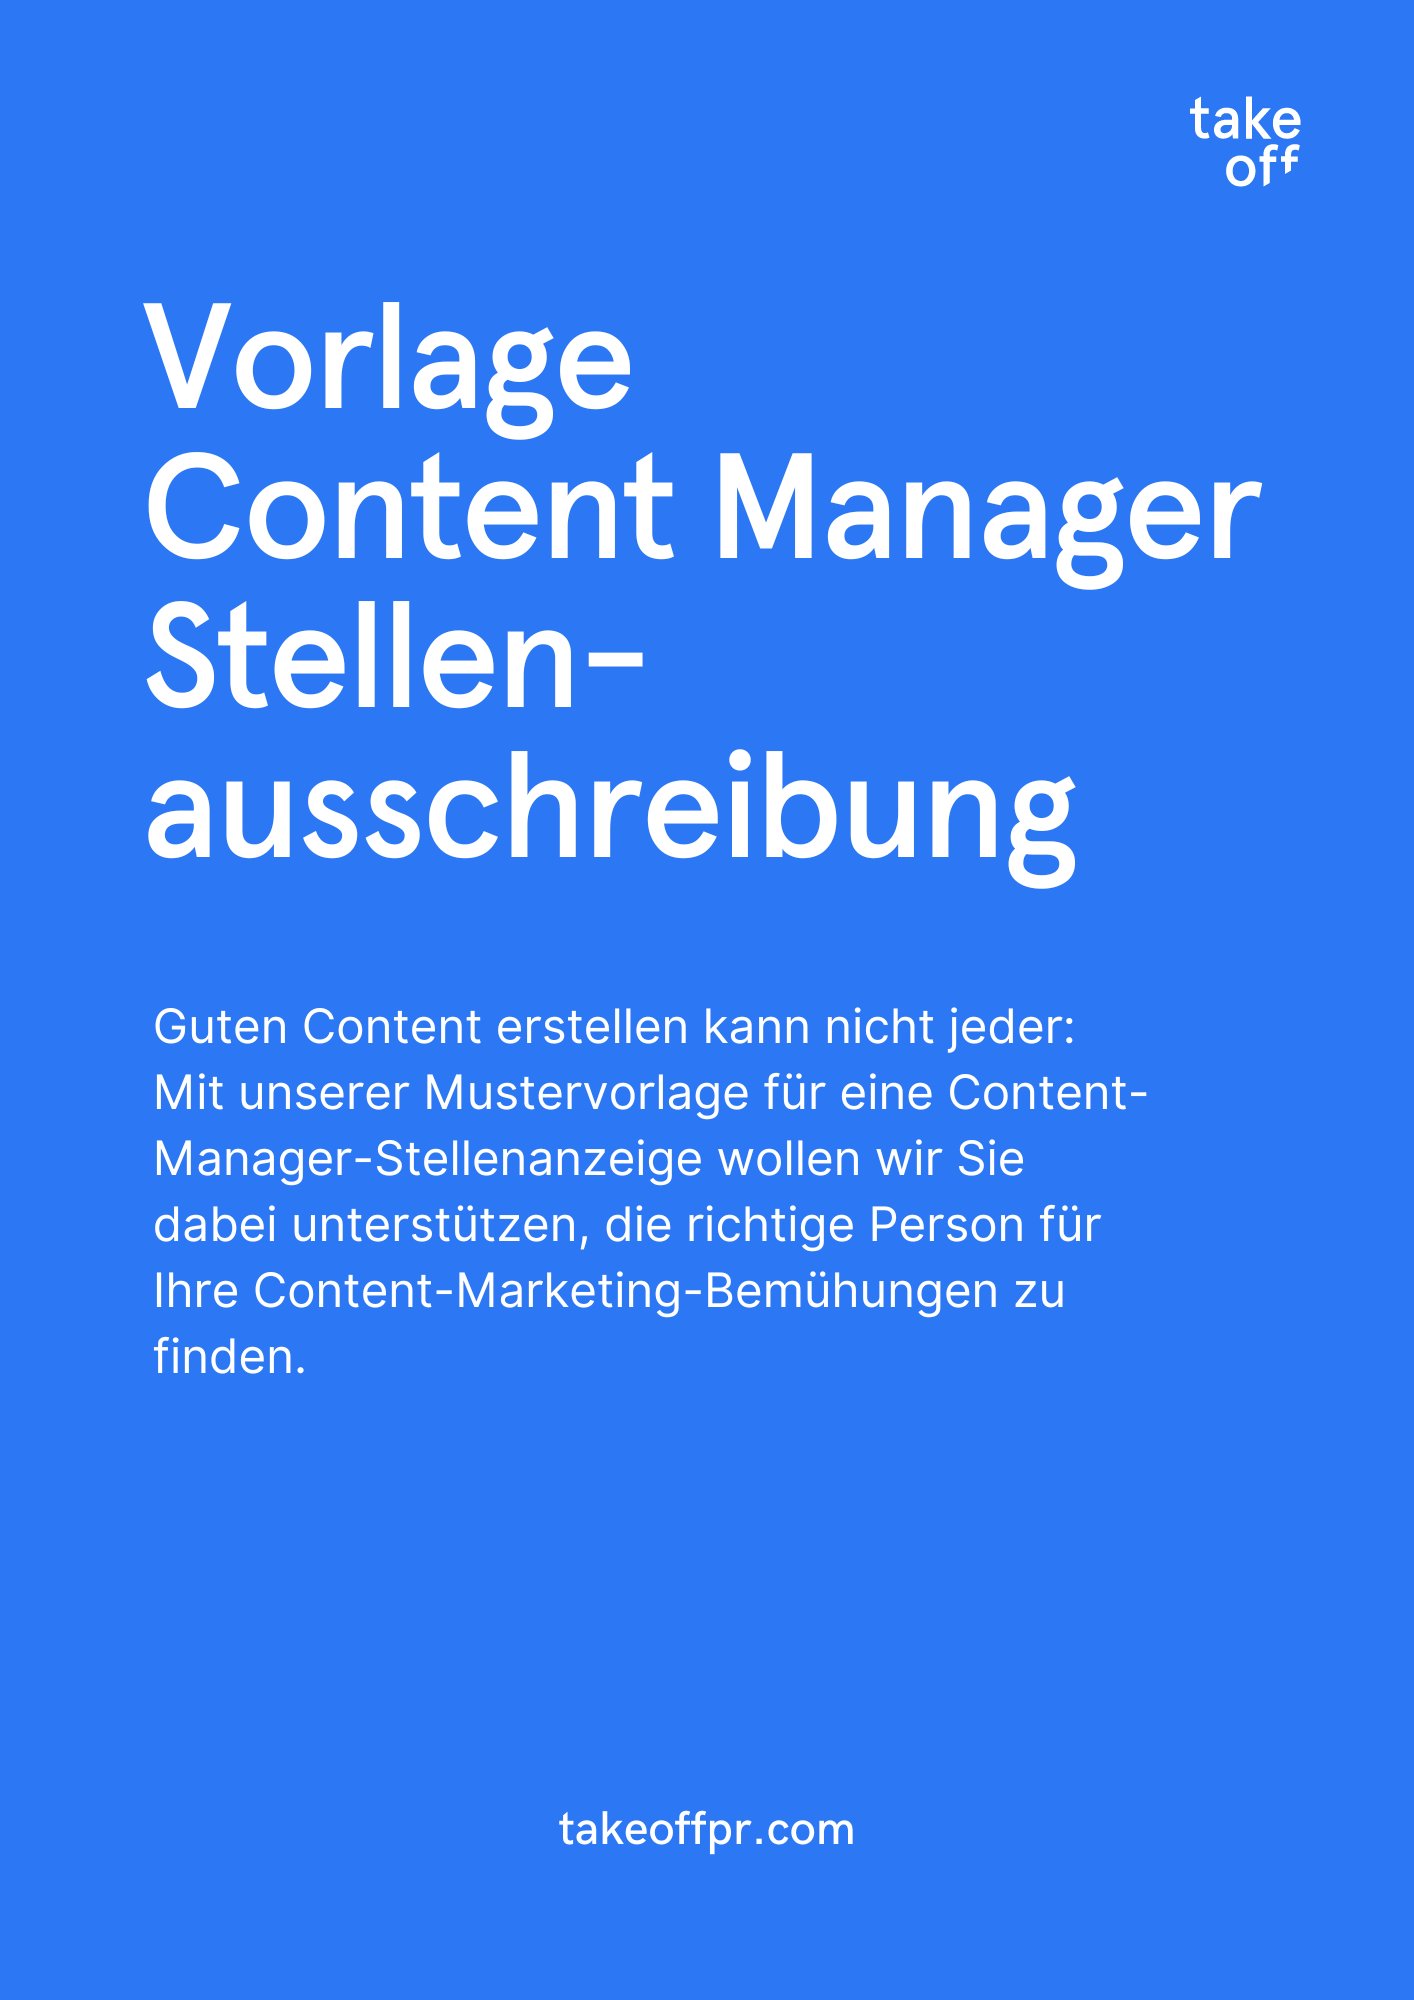 Vorlage Content-Manager-Stellenausschreibung